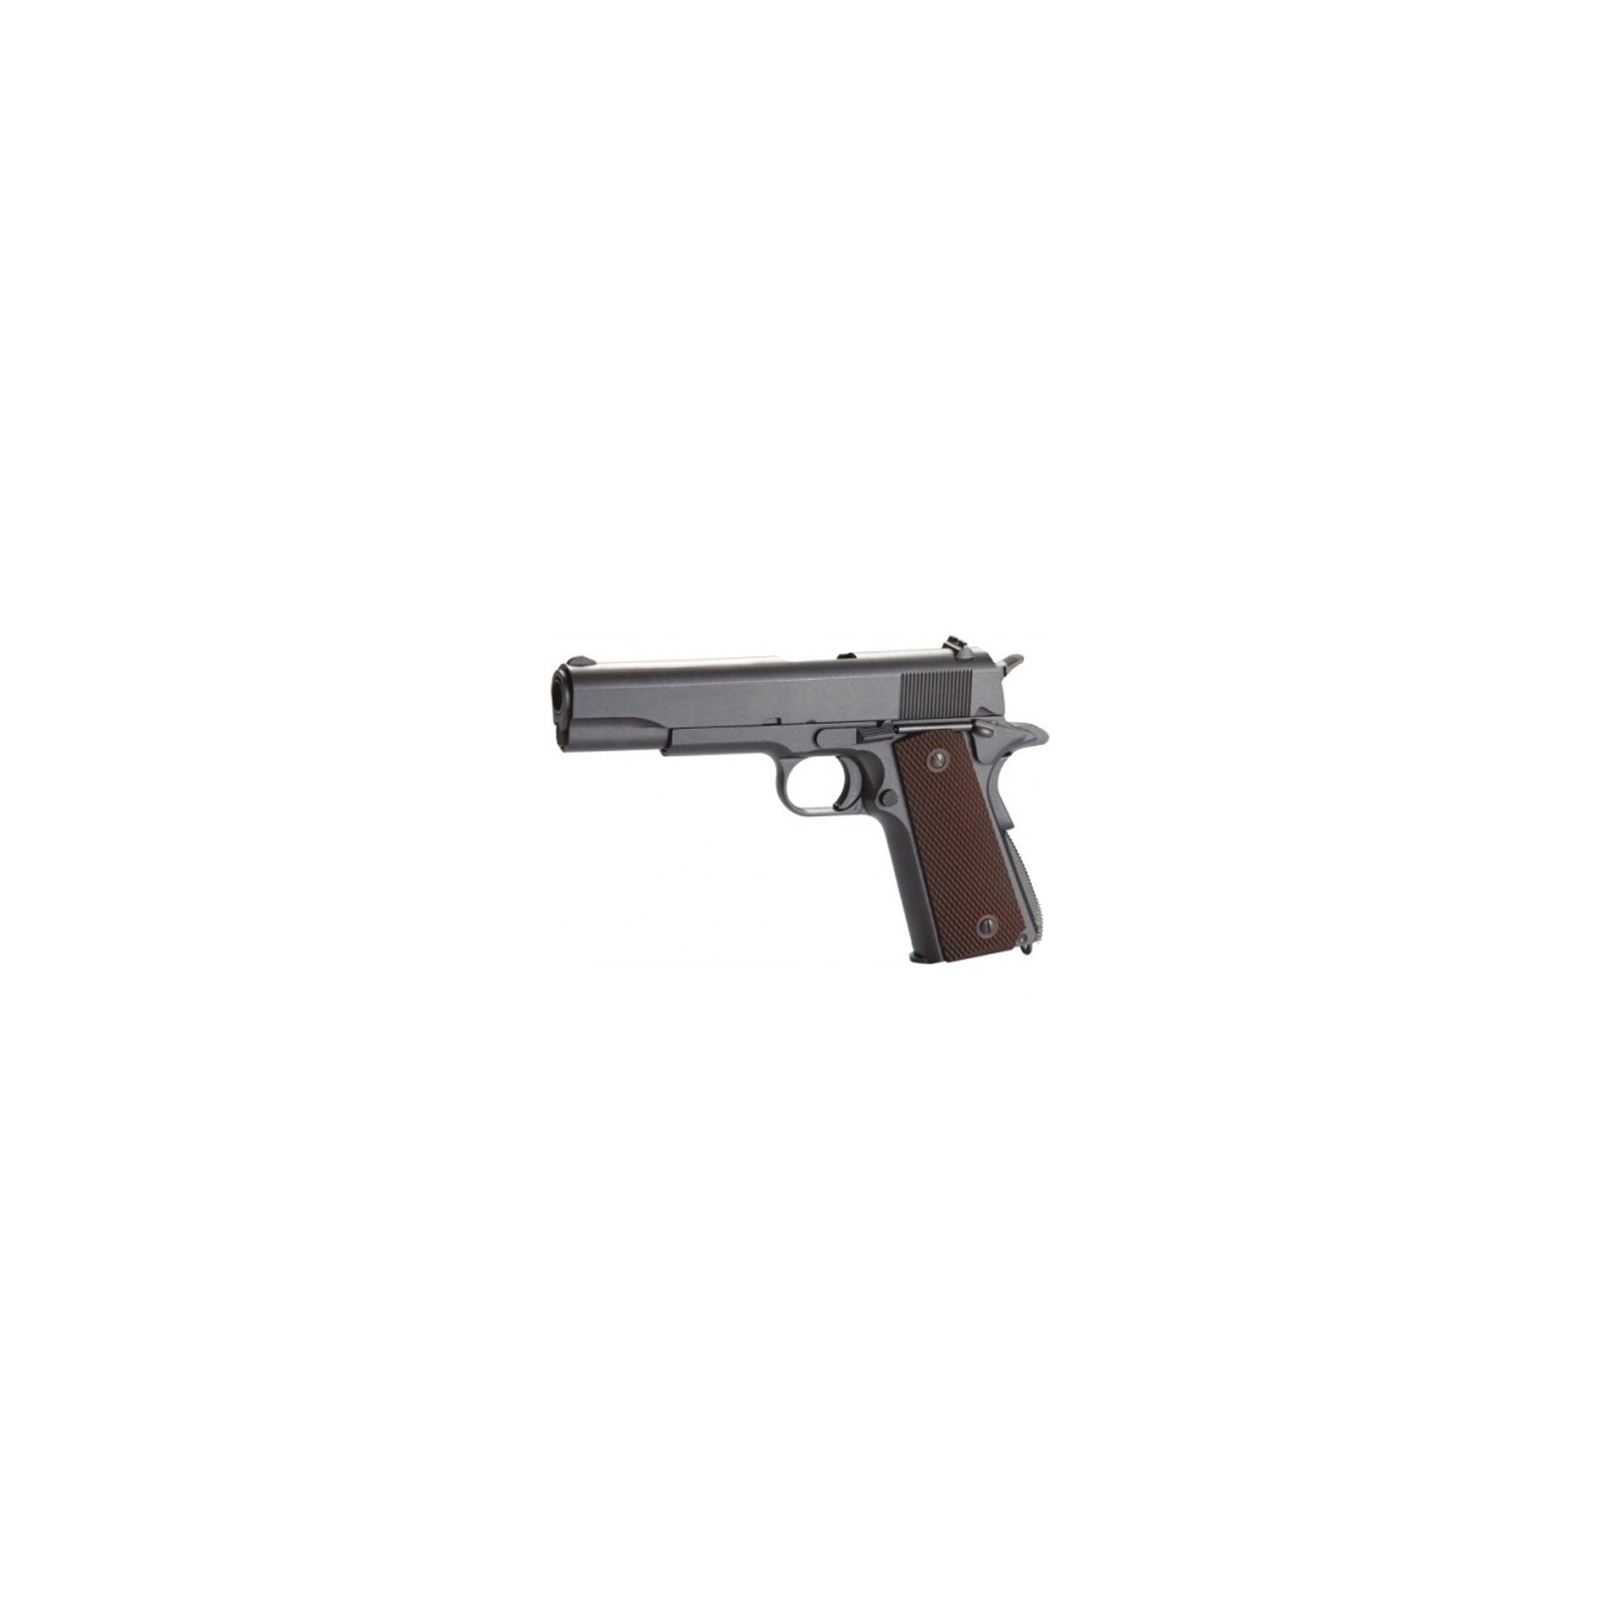 Пневматический пистолет KWC Colt 1911 (KMB76AHN)